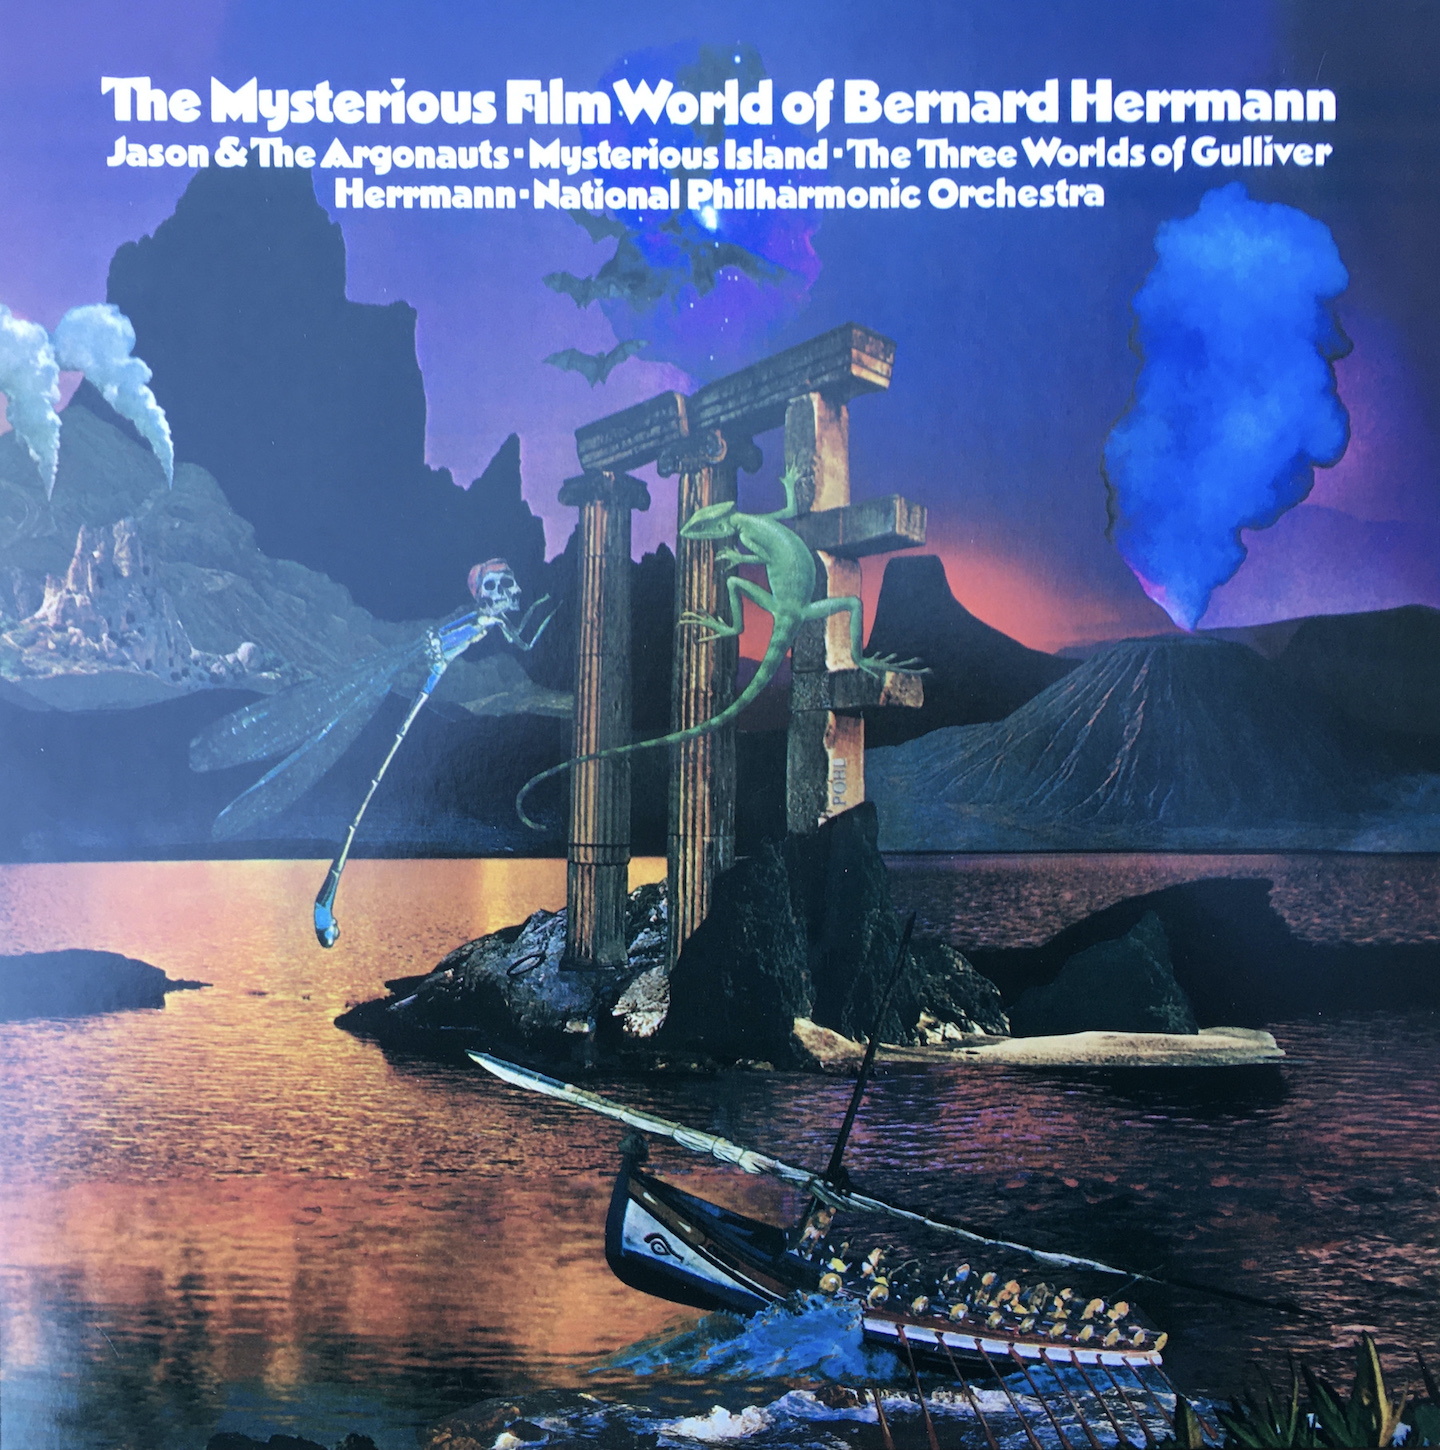 the-mysterious-film-world-of-bernard-herrmann-london-cover-1674068350.JPG